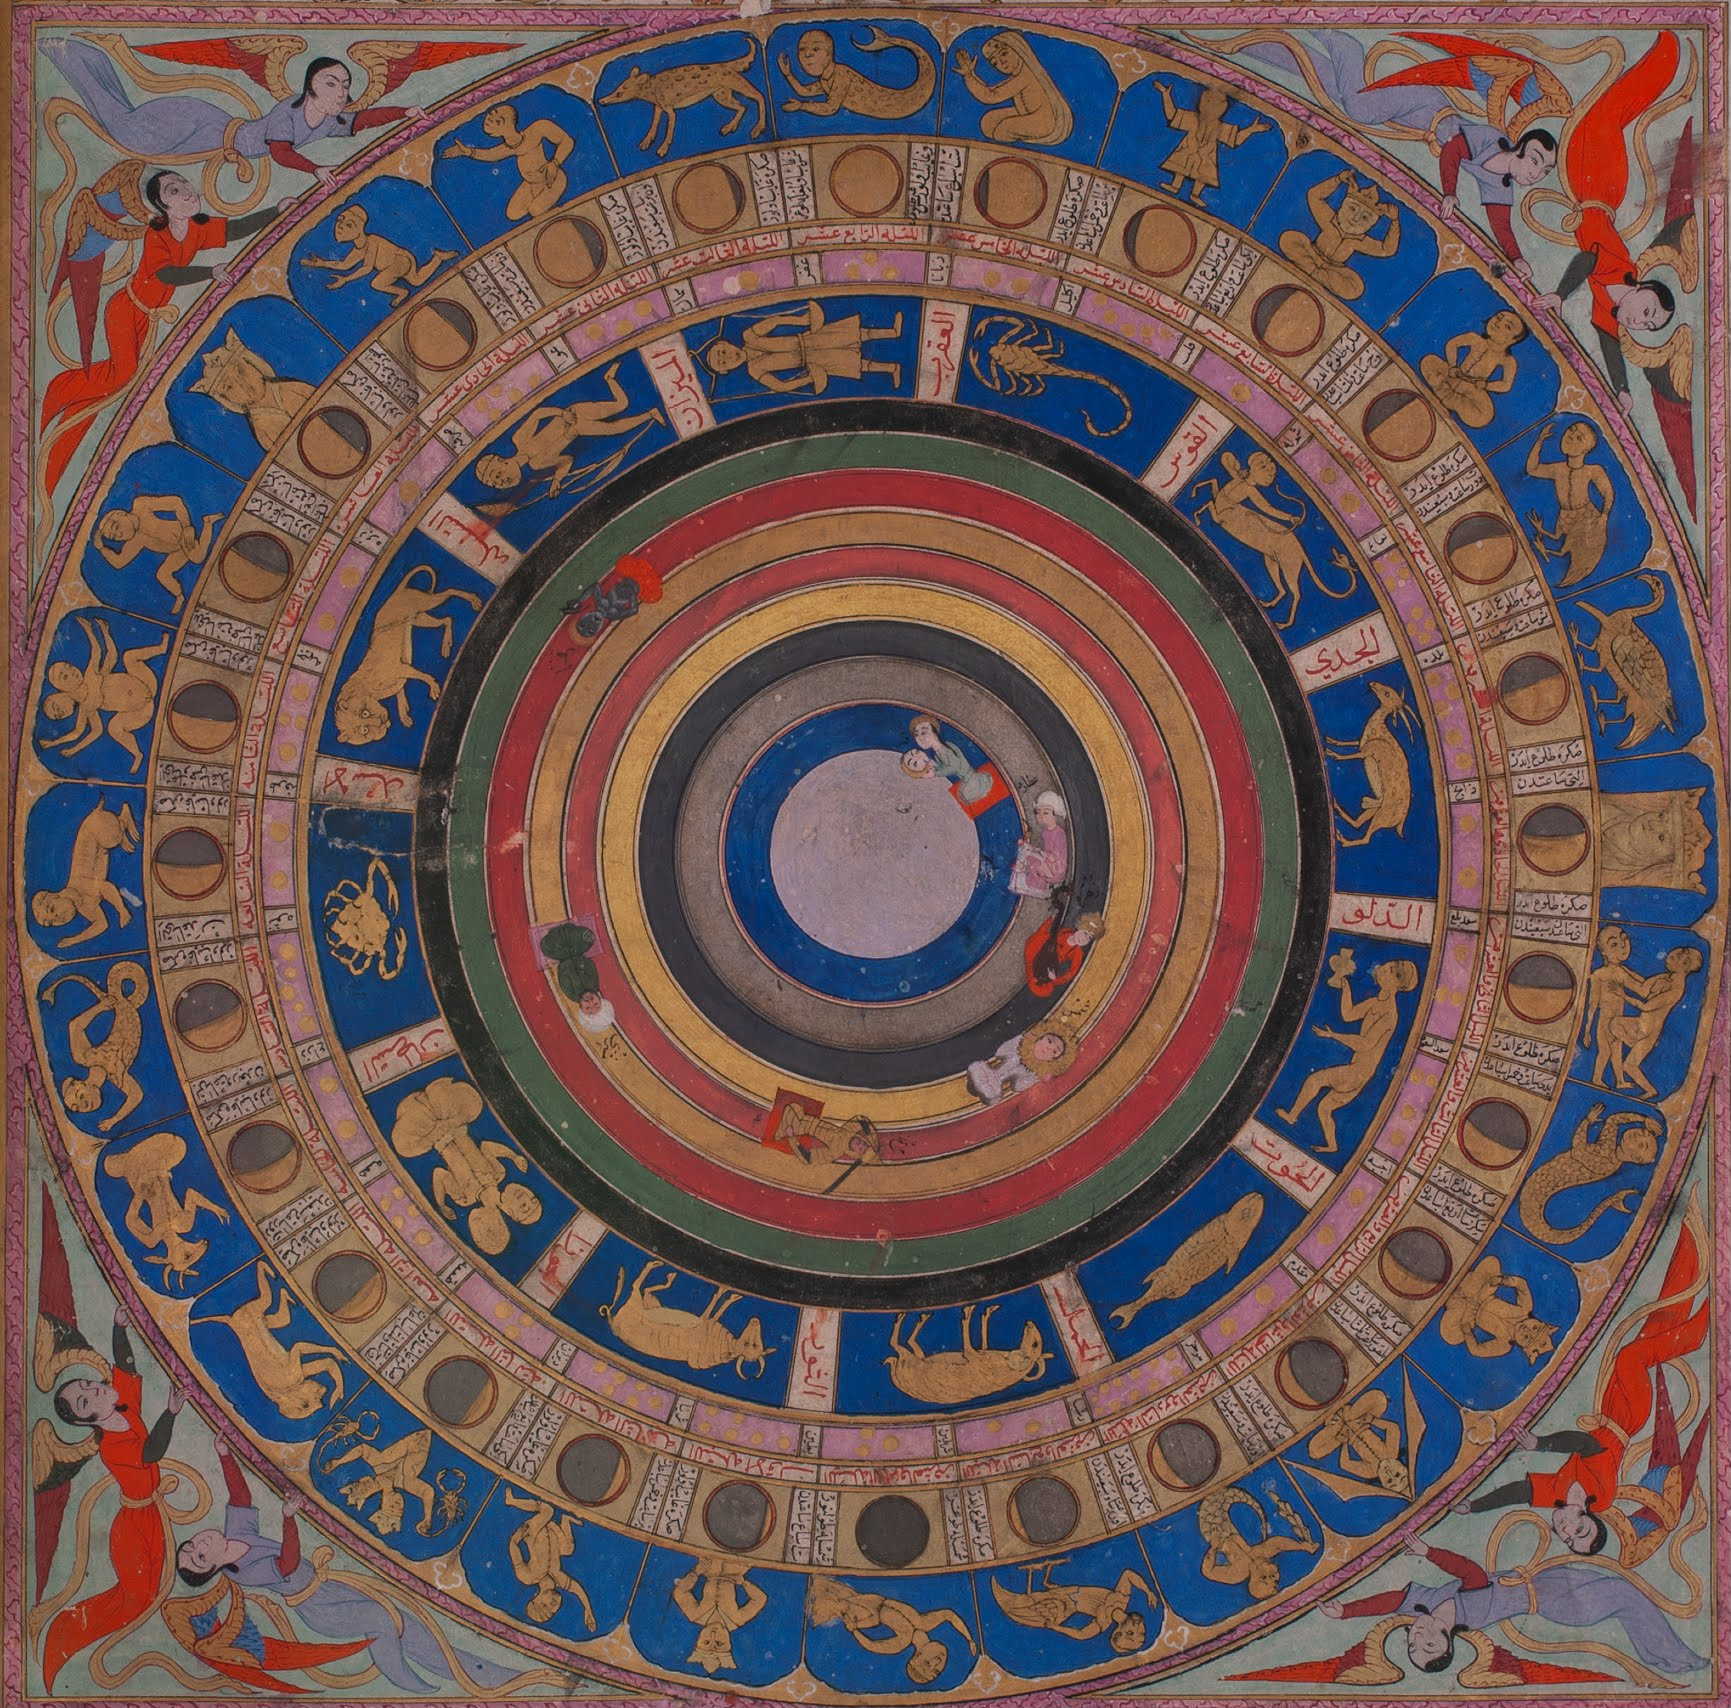 天体图 by 赛义德·洛克曼 阿舒里 - 1583 - 64.7 x 41.3 cm 